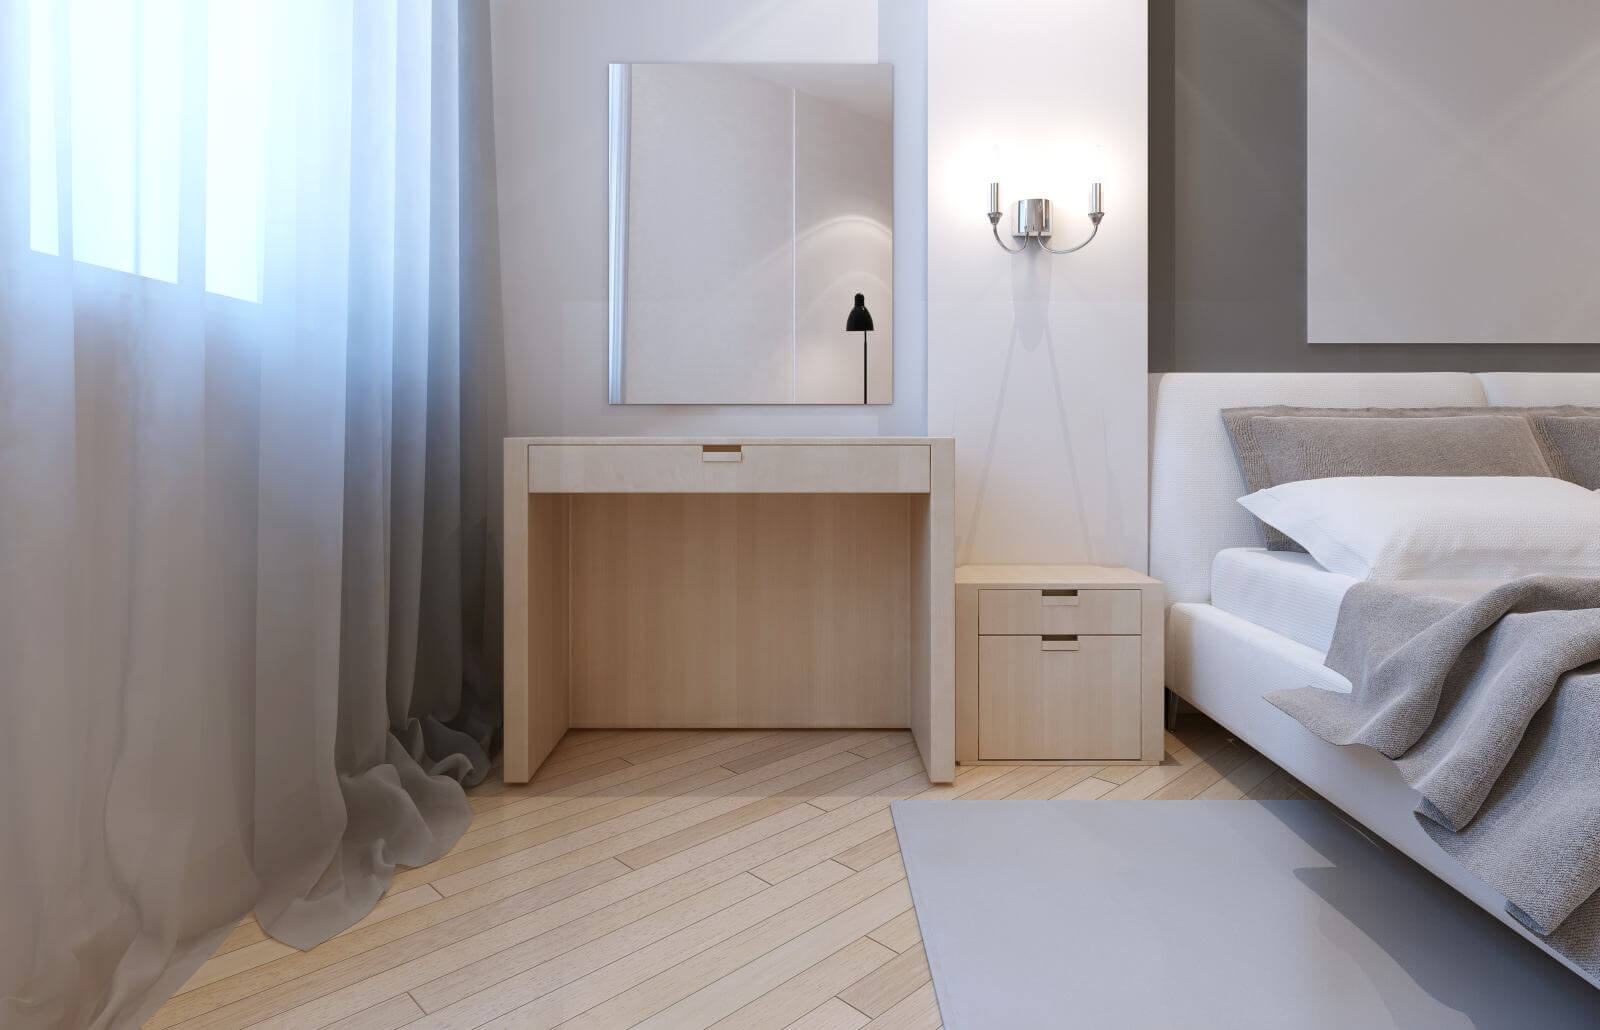 Idea of avant-garde bedroom. 3D render